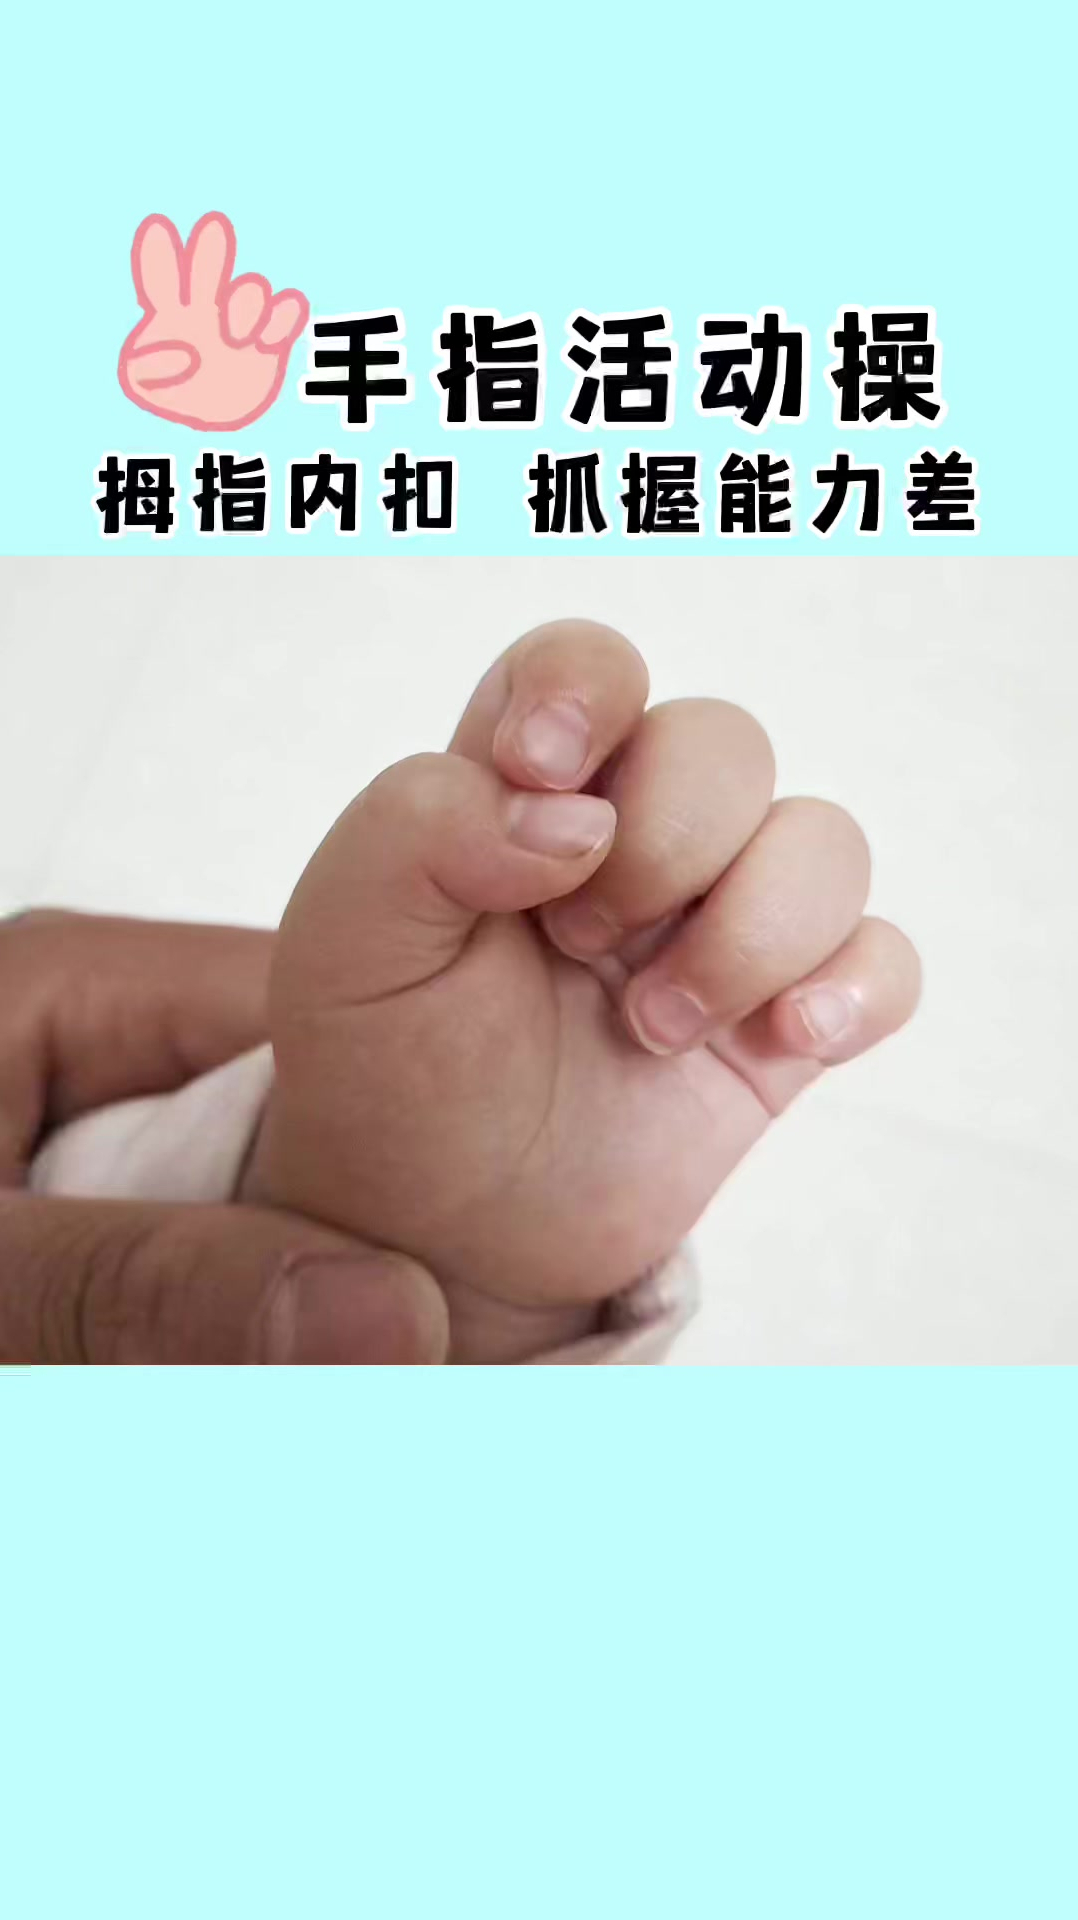 宝宝大拇指内扣,可能是宝宝肌张力过高的表现